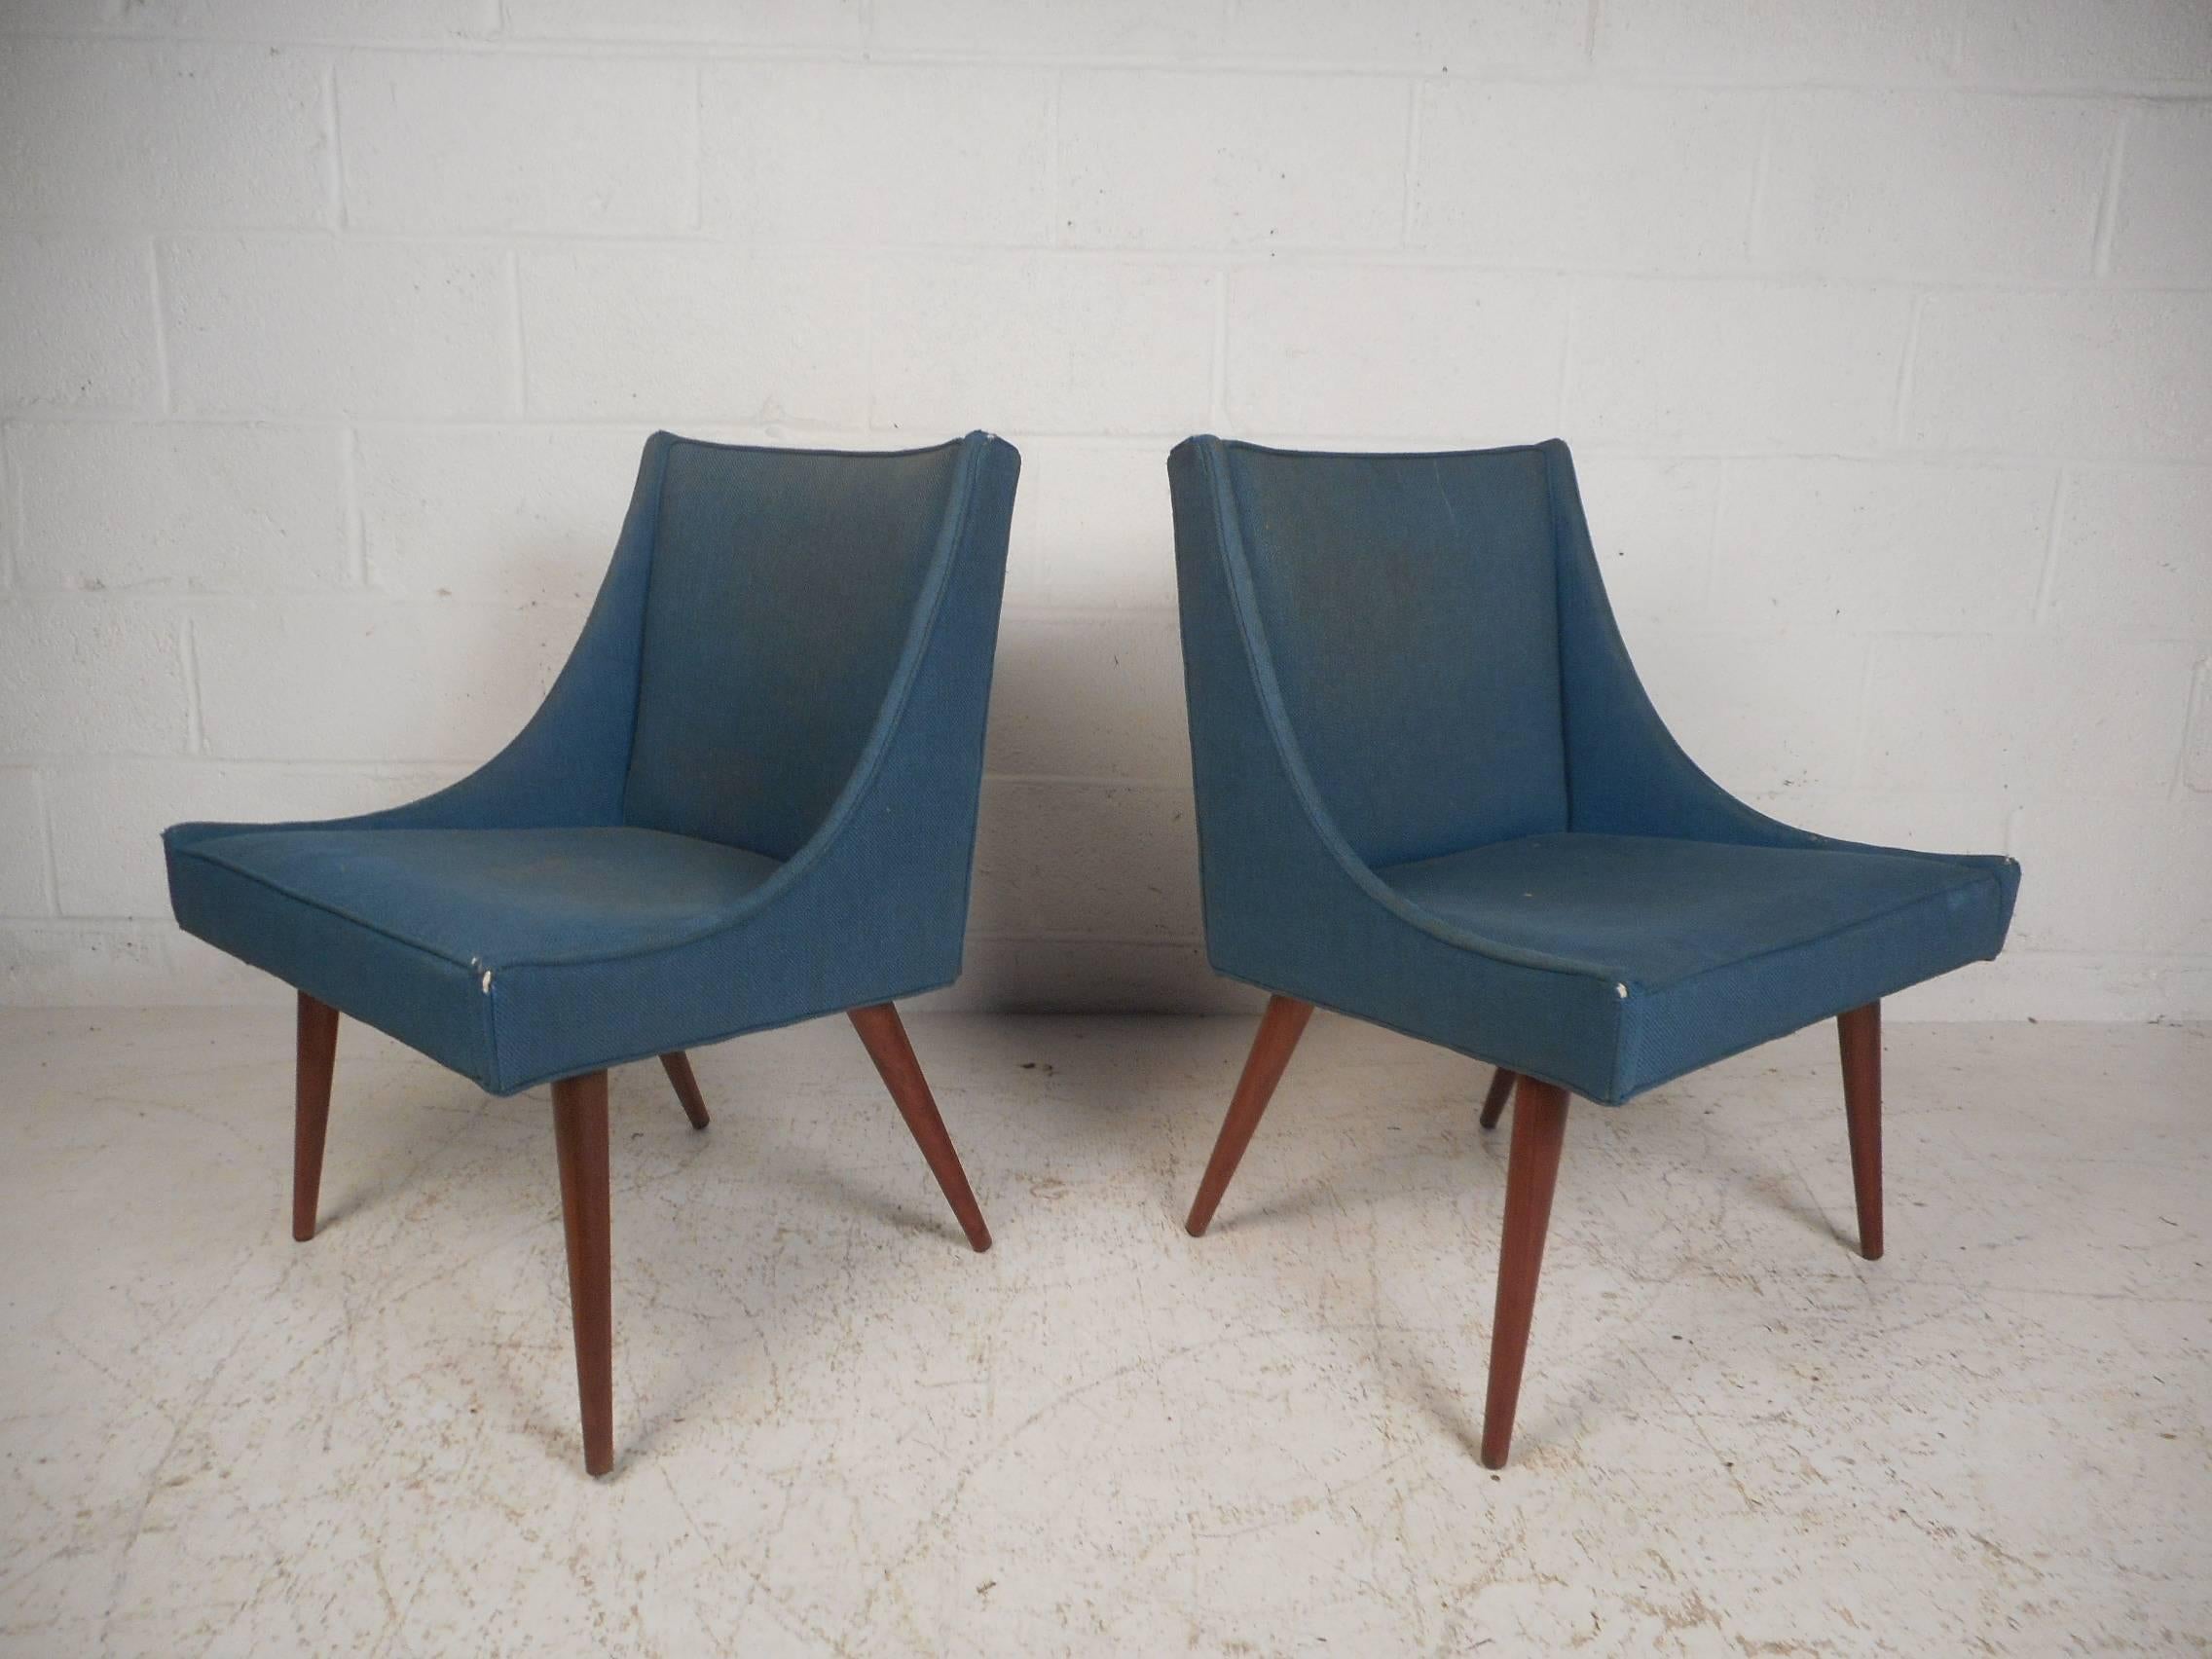 Cette superbe paire de chaises longues vintage modernes est dotée de pieds évasés en noyer. Un design de style pantoufle recouvert d'un tissu bleu vintage assure un grand confort sans sacrifier le style. Cette paire unique de chaises est le